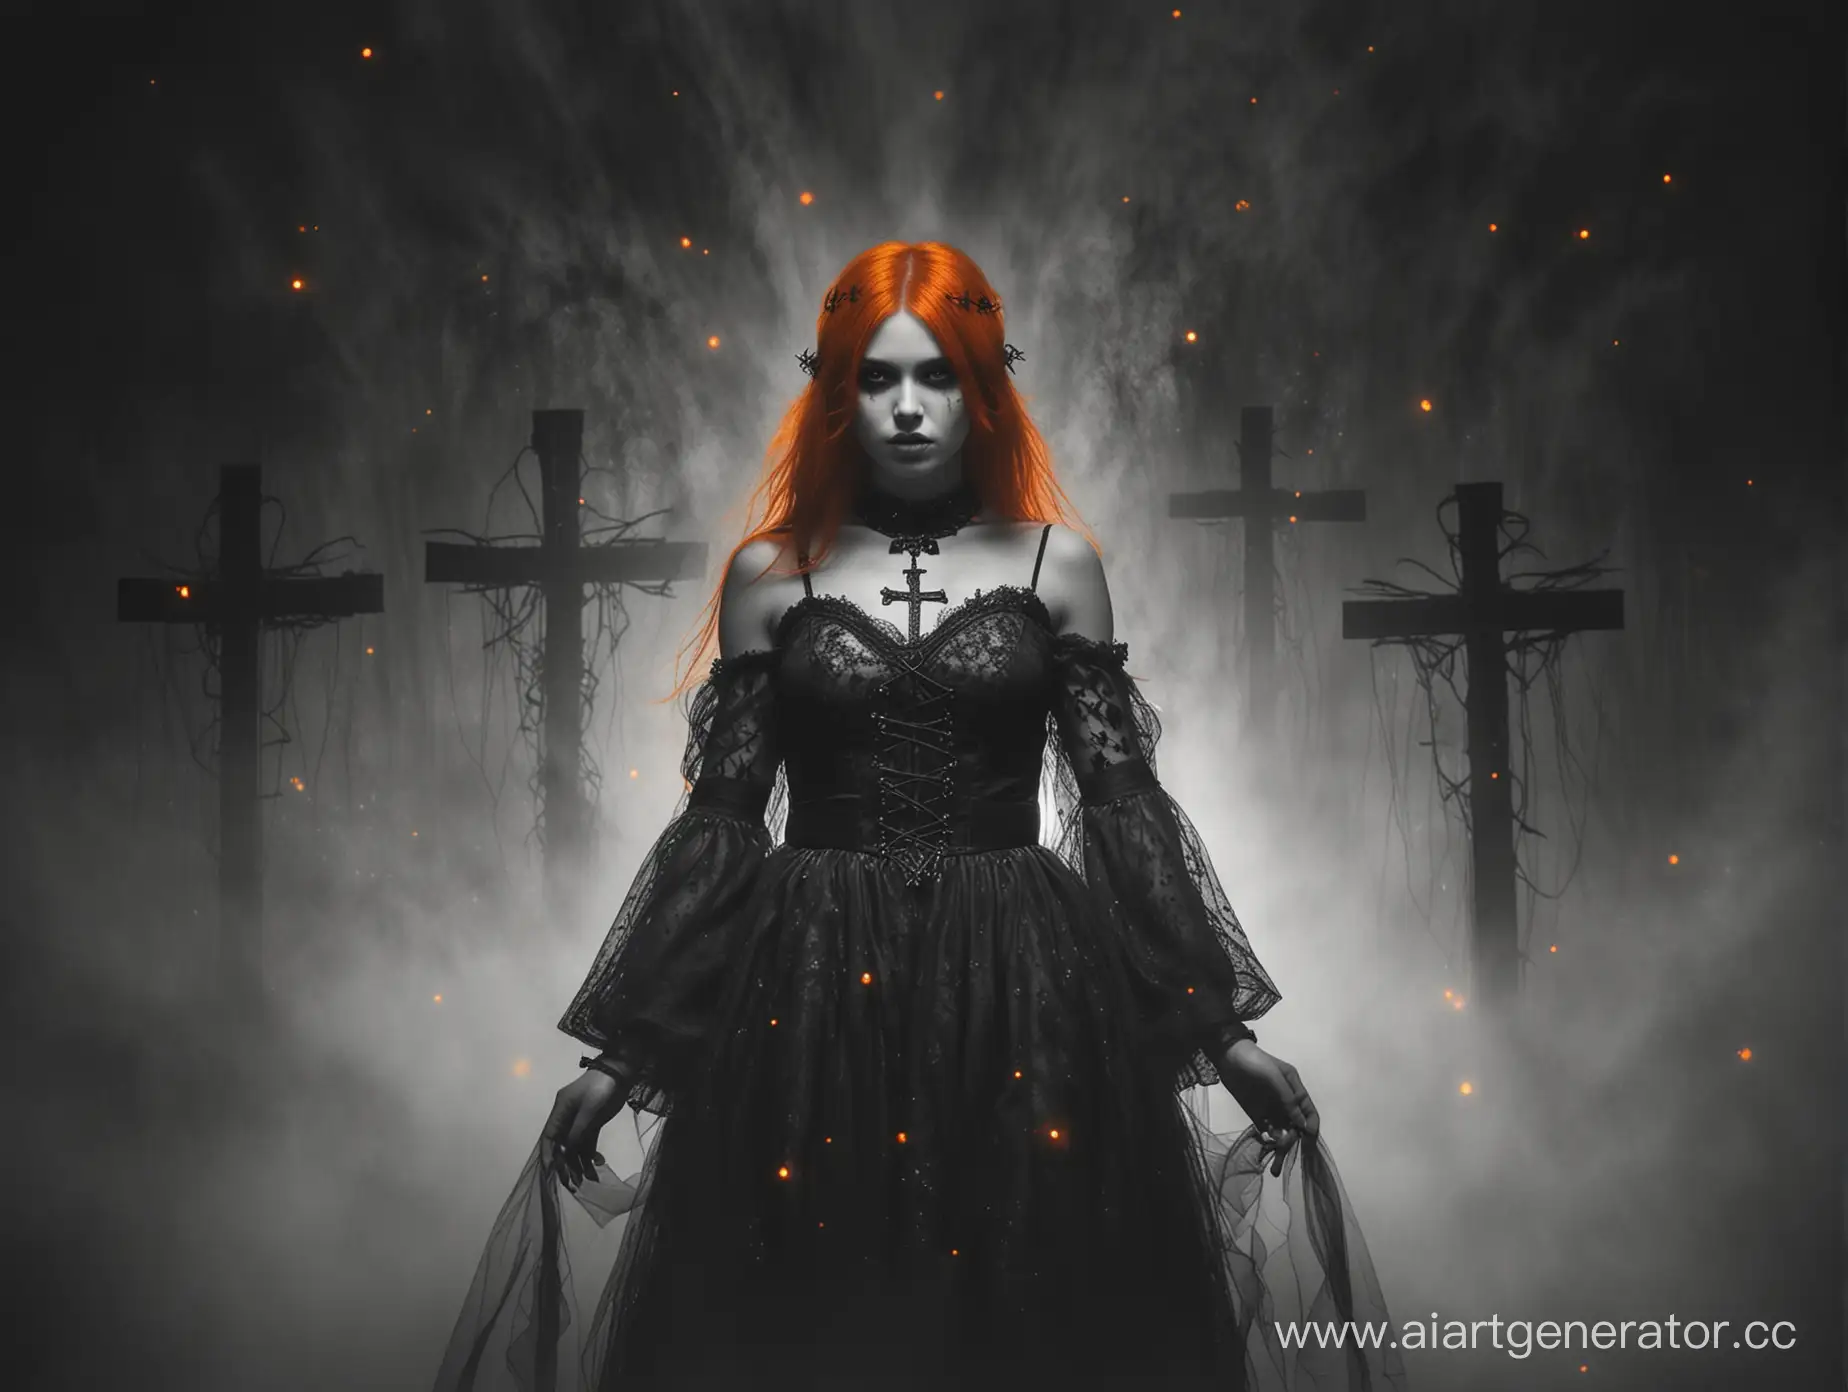 Dark-Fantasy-Portrait-OrangeEyed-Girl-in-Mystical-Mist